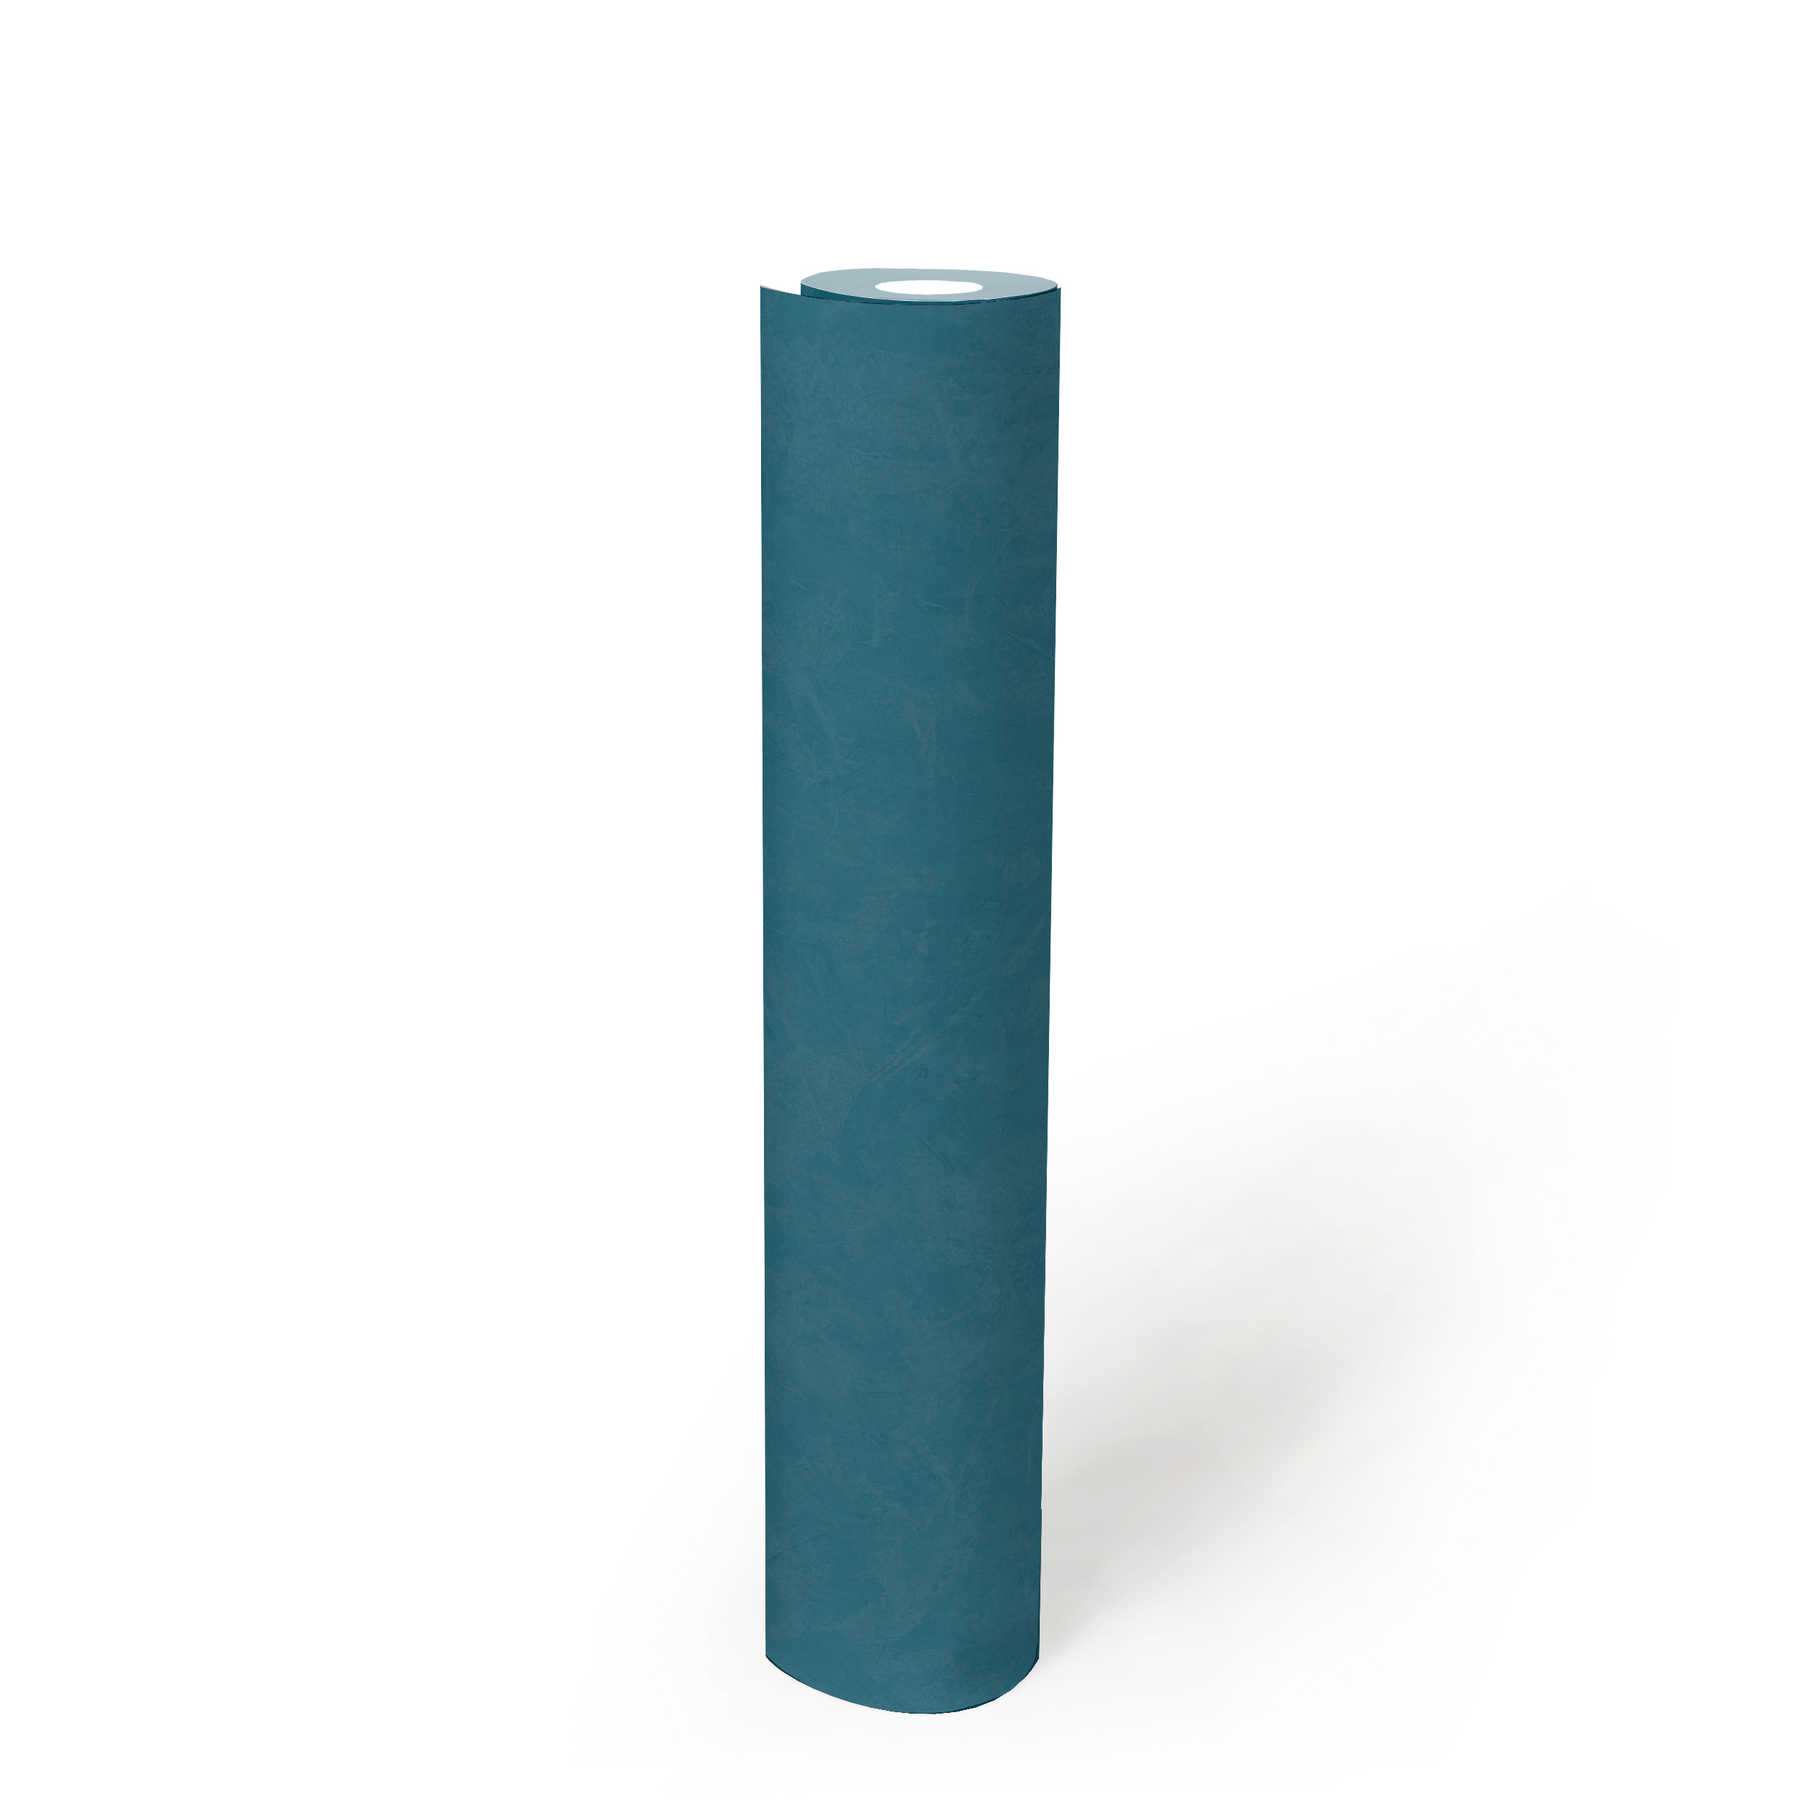             Papier peint intissé uni aspect truelle - bleu, pétrole
        